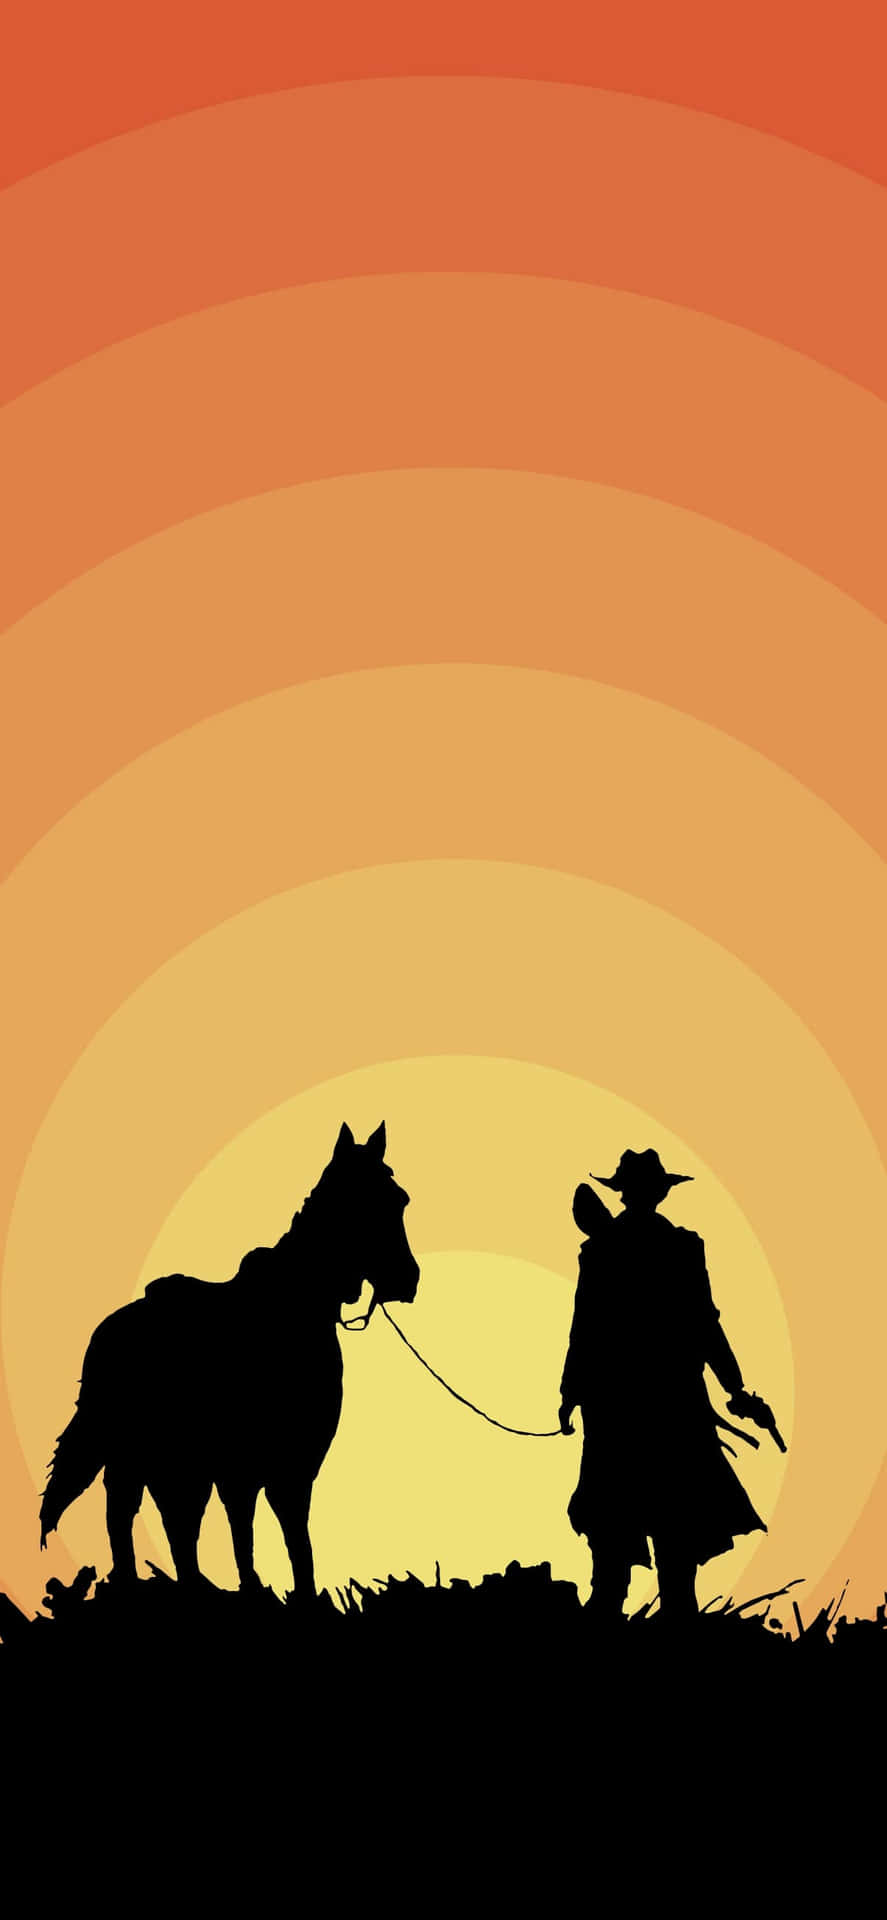 Caption: Mystical Cowboy Adventure - iPhone Wallpaper Wallpaper